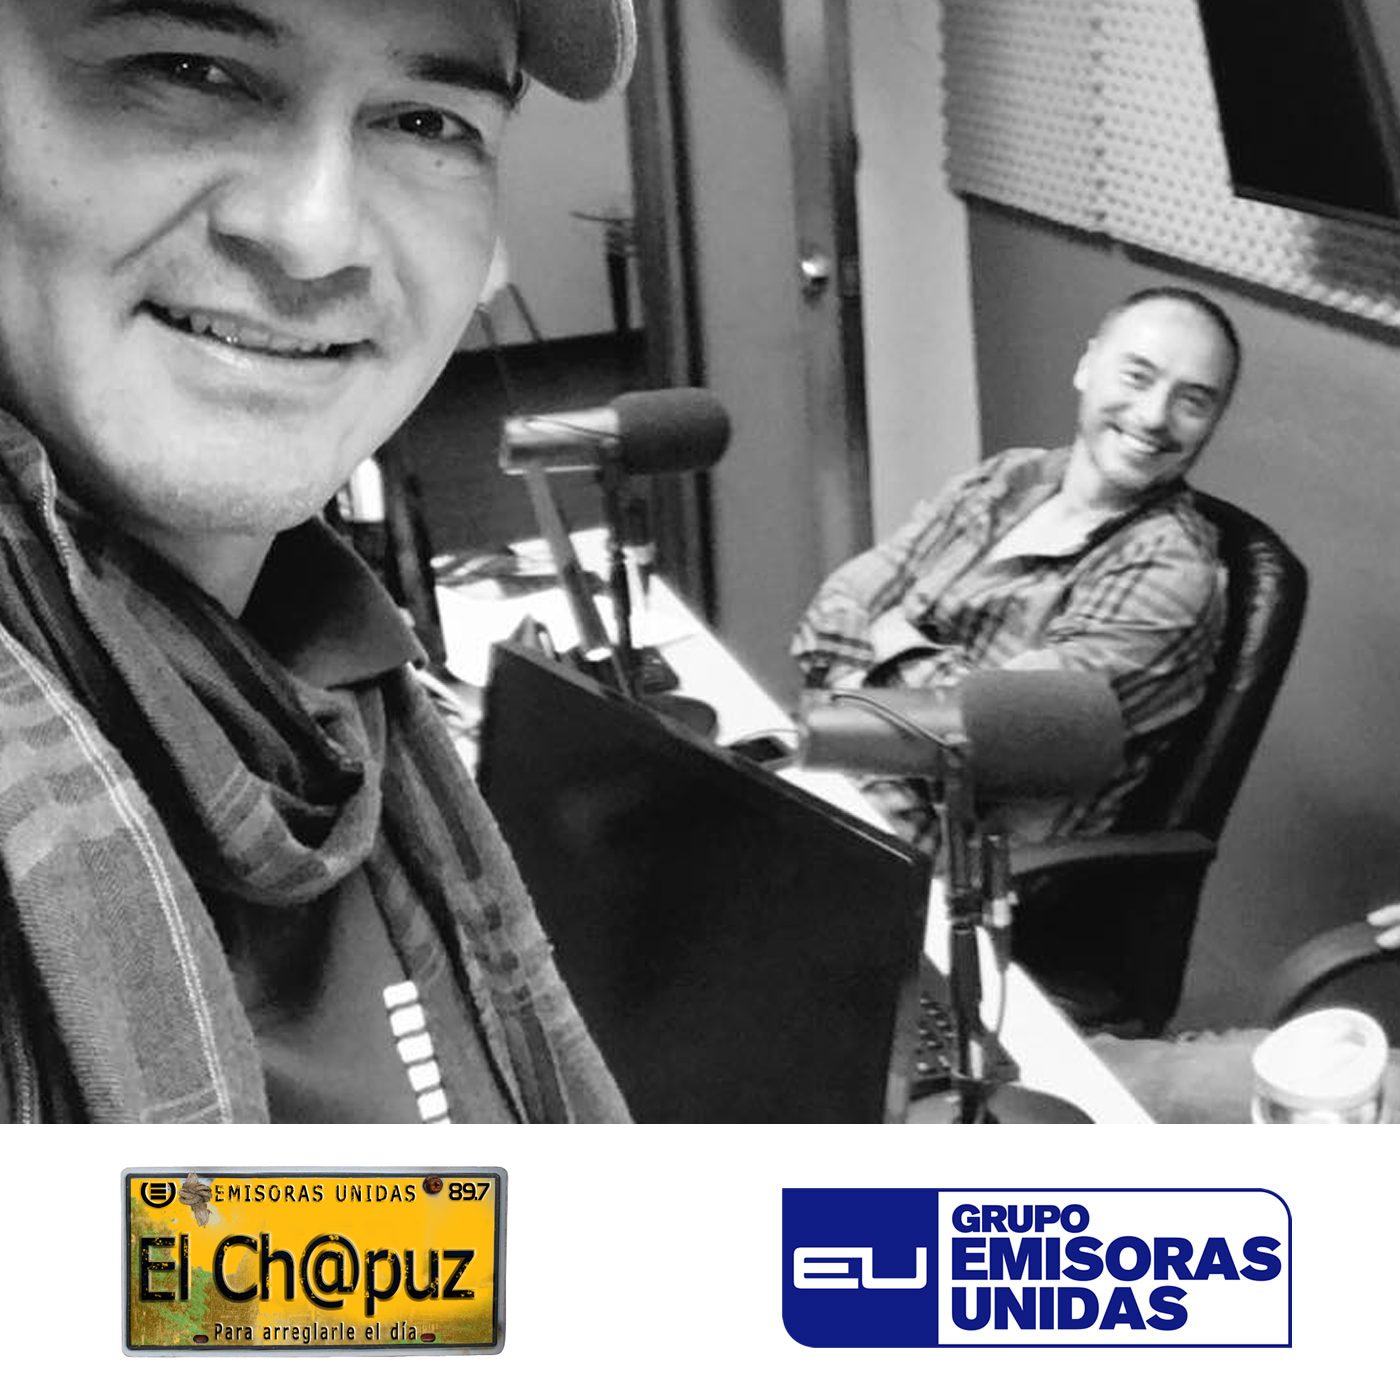 EC01 - El Chapuz - Emisoras unidas - #QueriaSer 